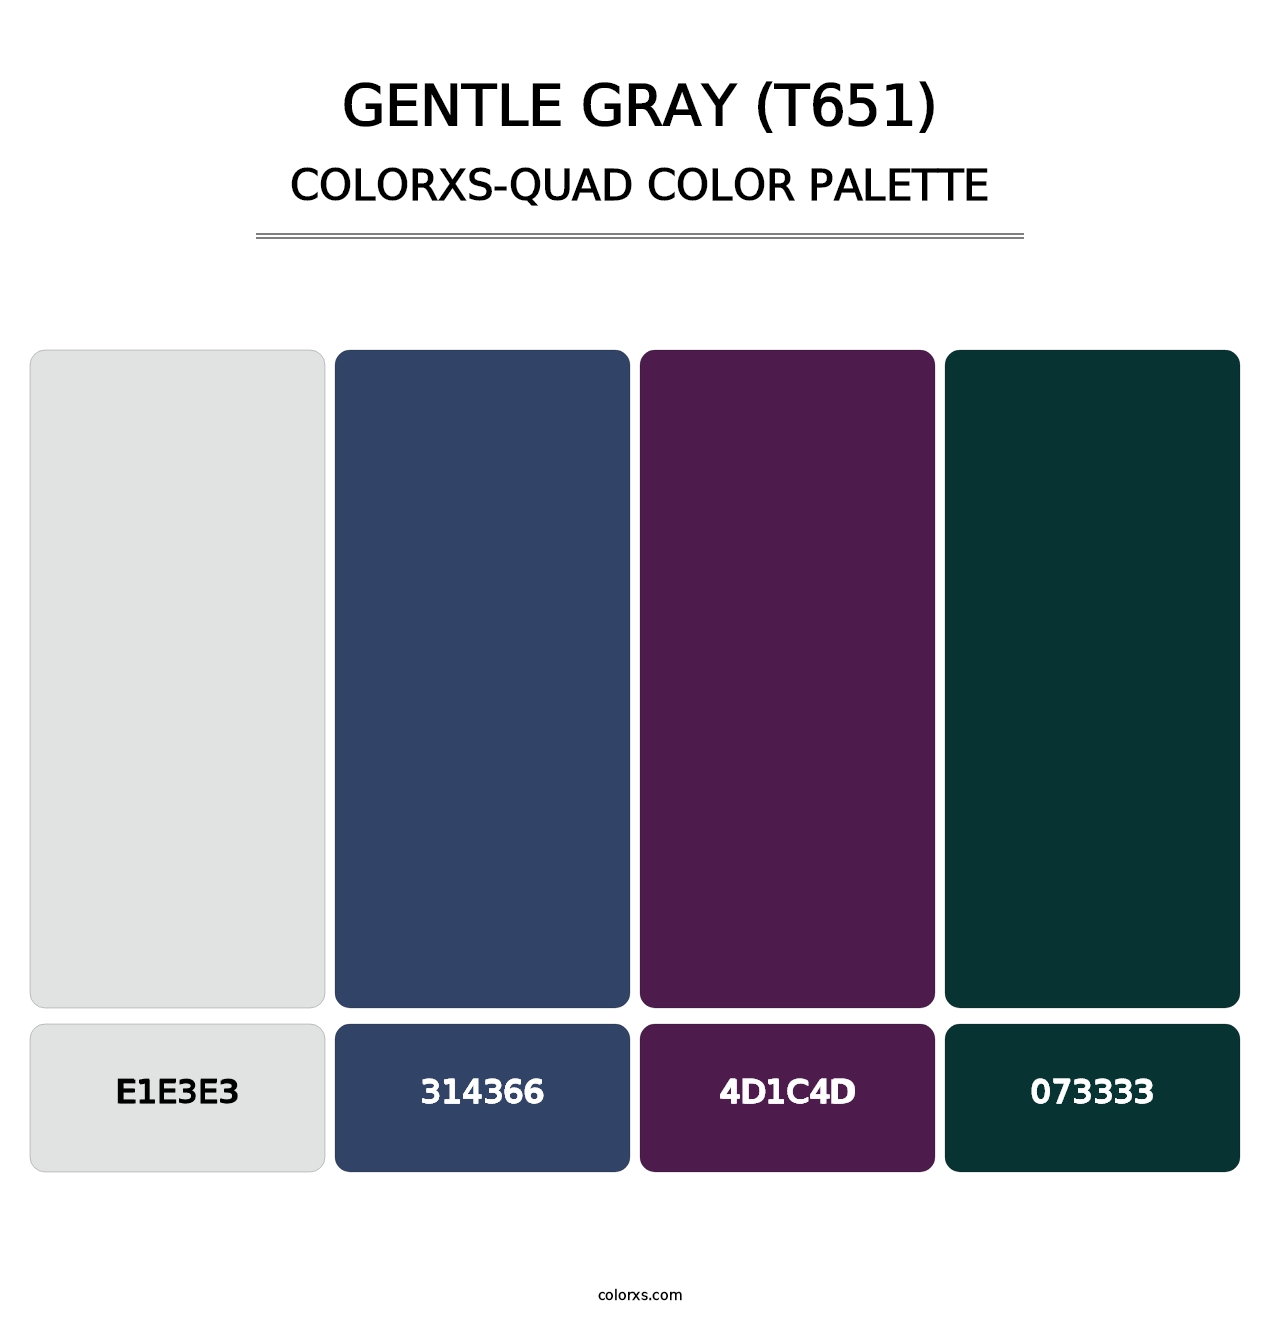 Gentle Gray (T651) - Colorxs Quad Palette